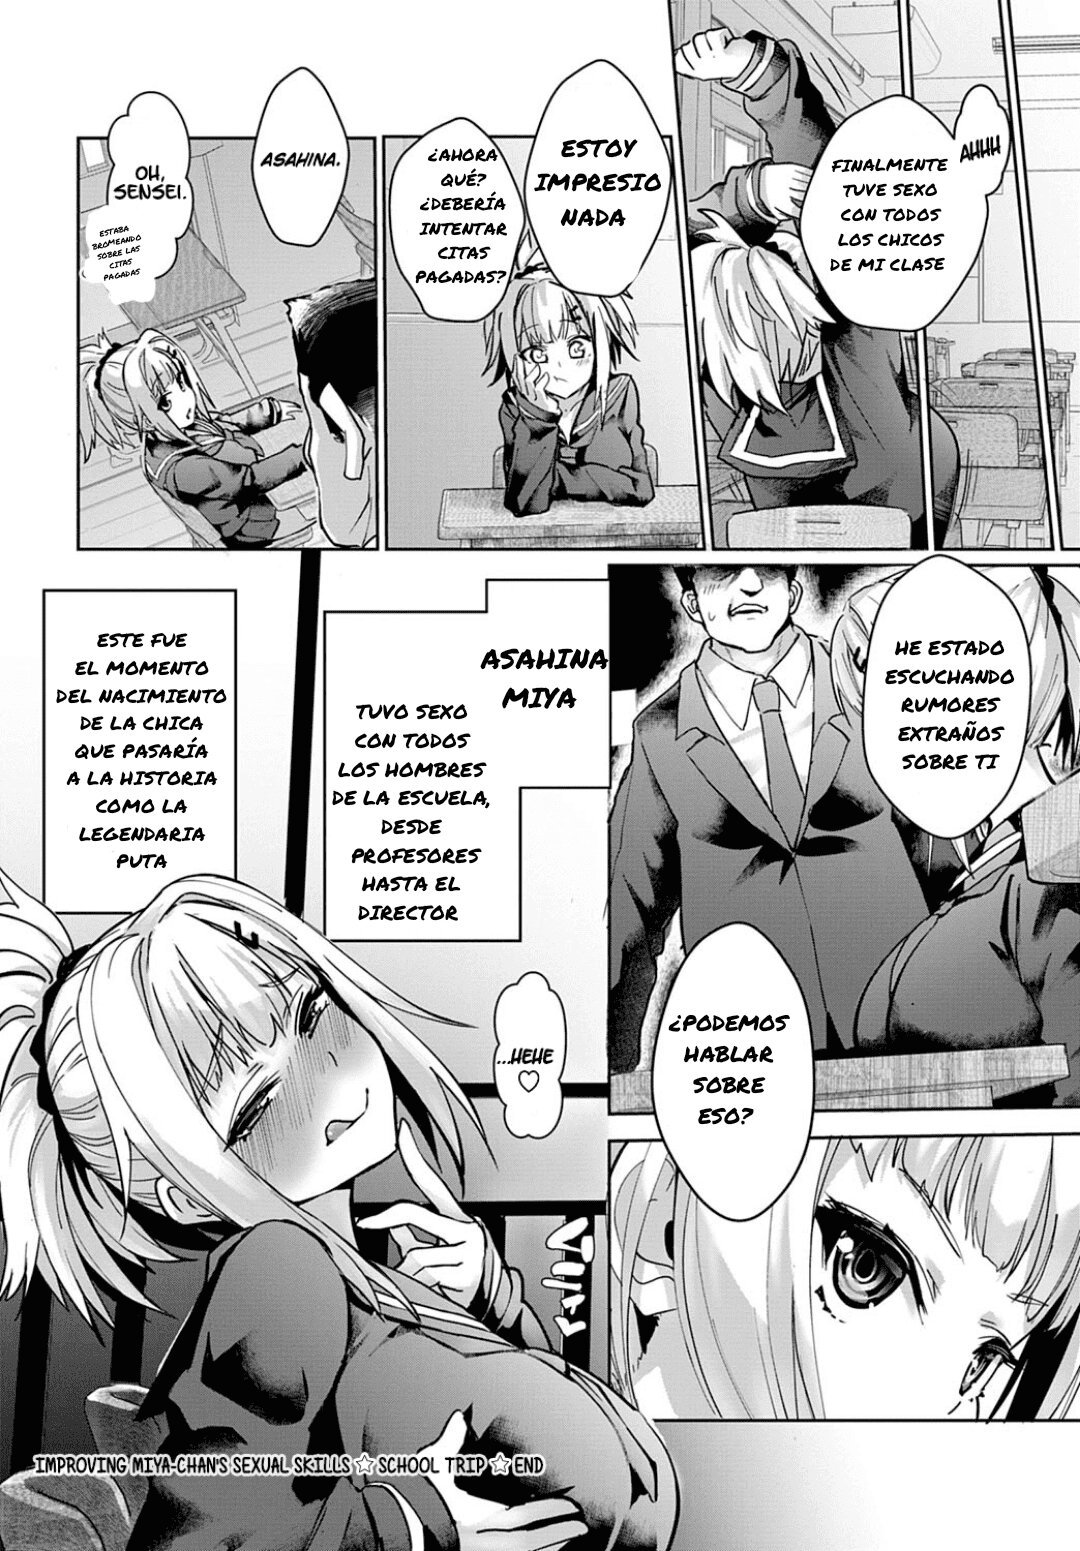 Mejorando las habilidades sexuales de Miya-chan Viaje escolar - 53